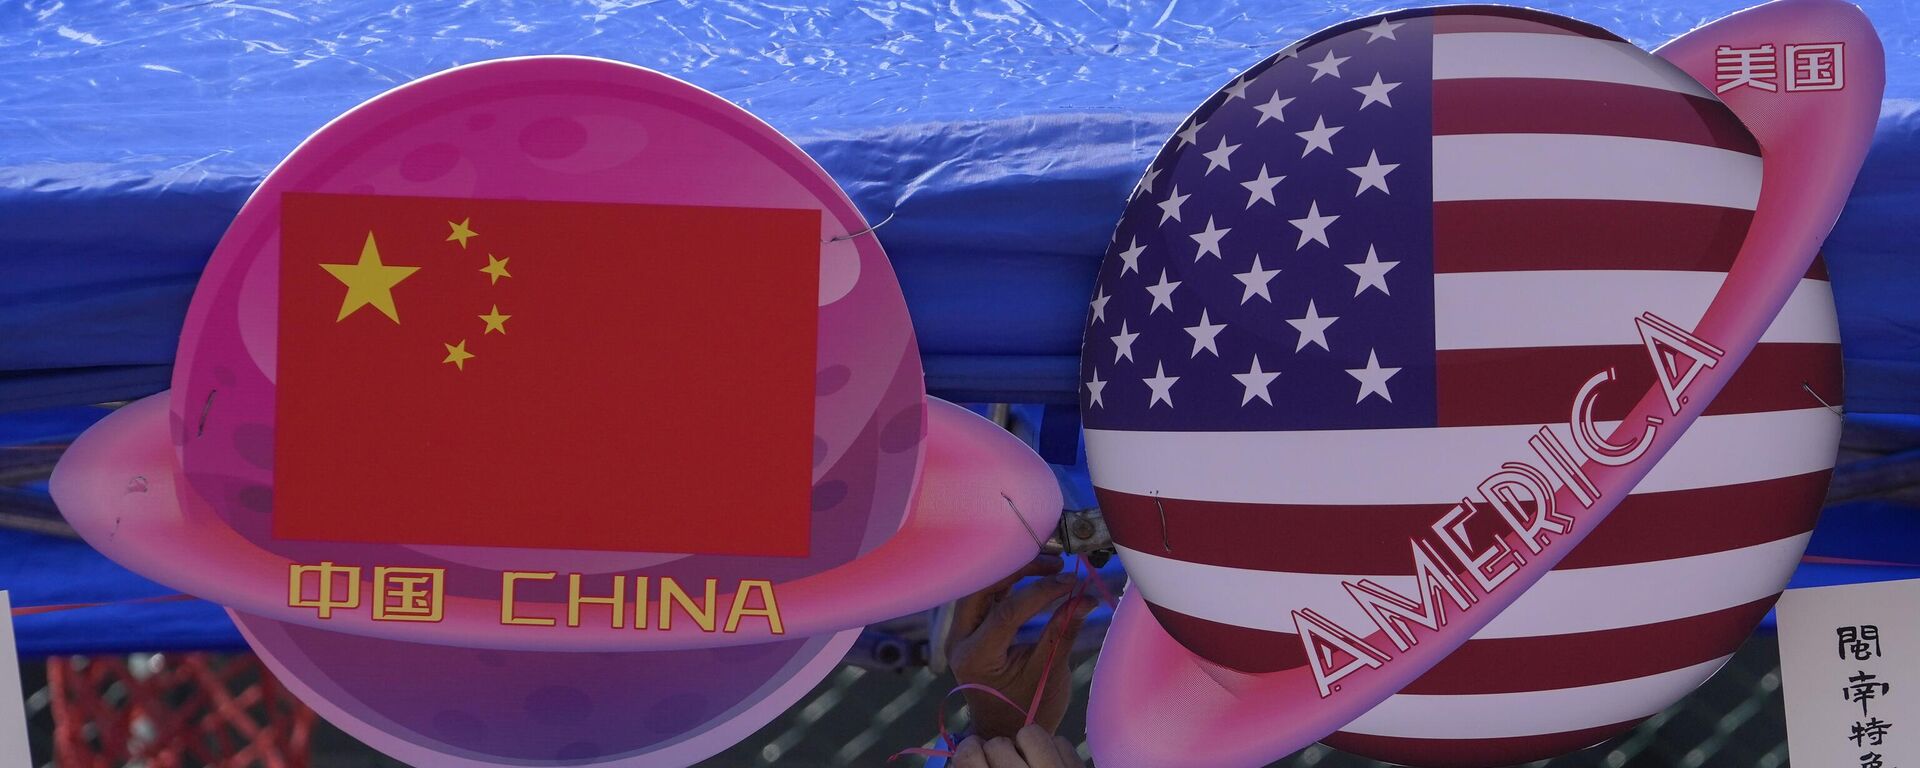 Planetas en forma de las banderas china y estadounidense durante el Carnaval de Primavera en Pekín, el 13 de mayo de 2023 - Sputnik Mundo, 1920, 14.06.2023